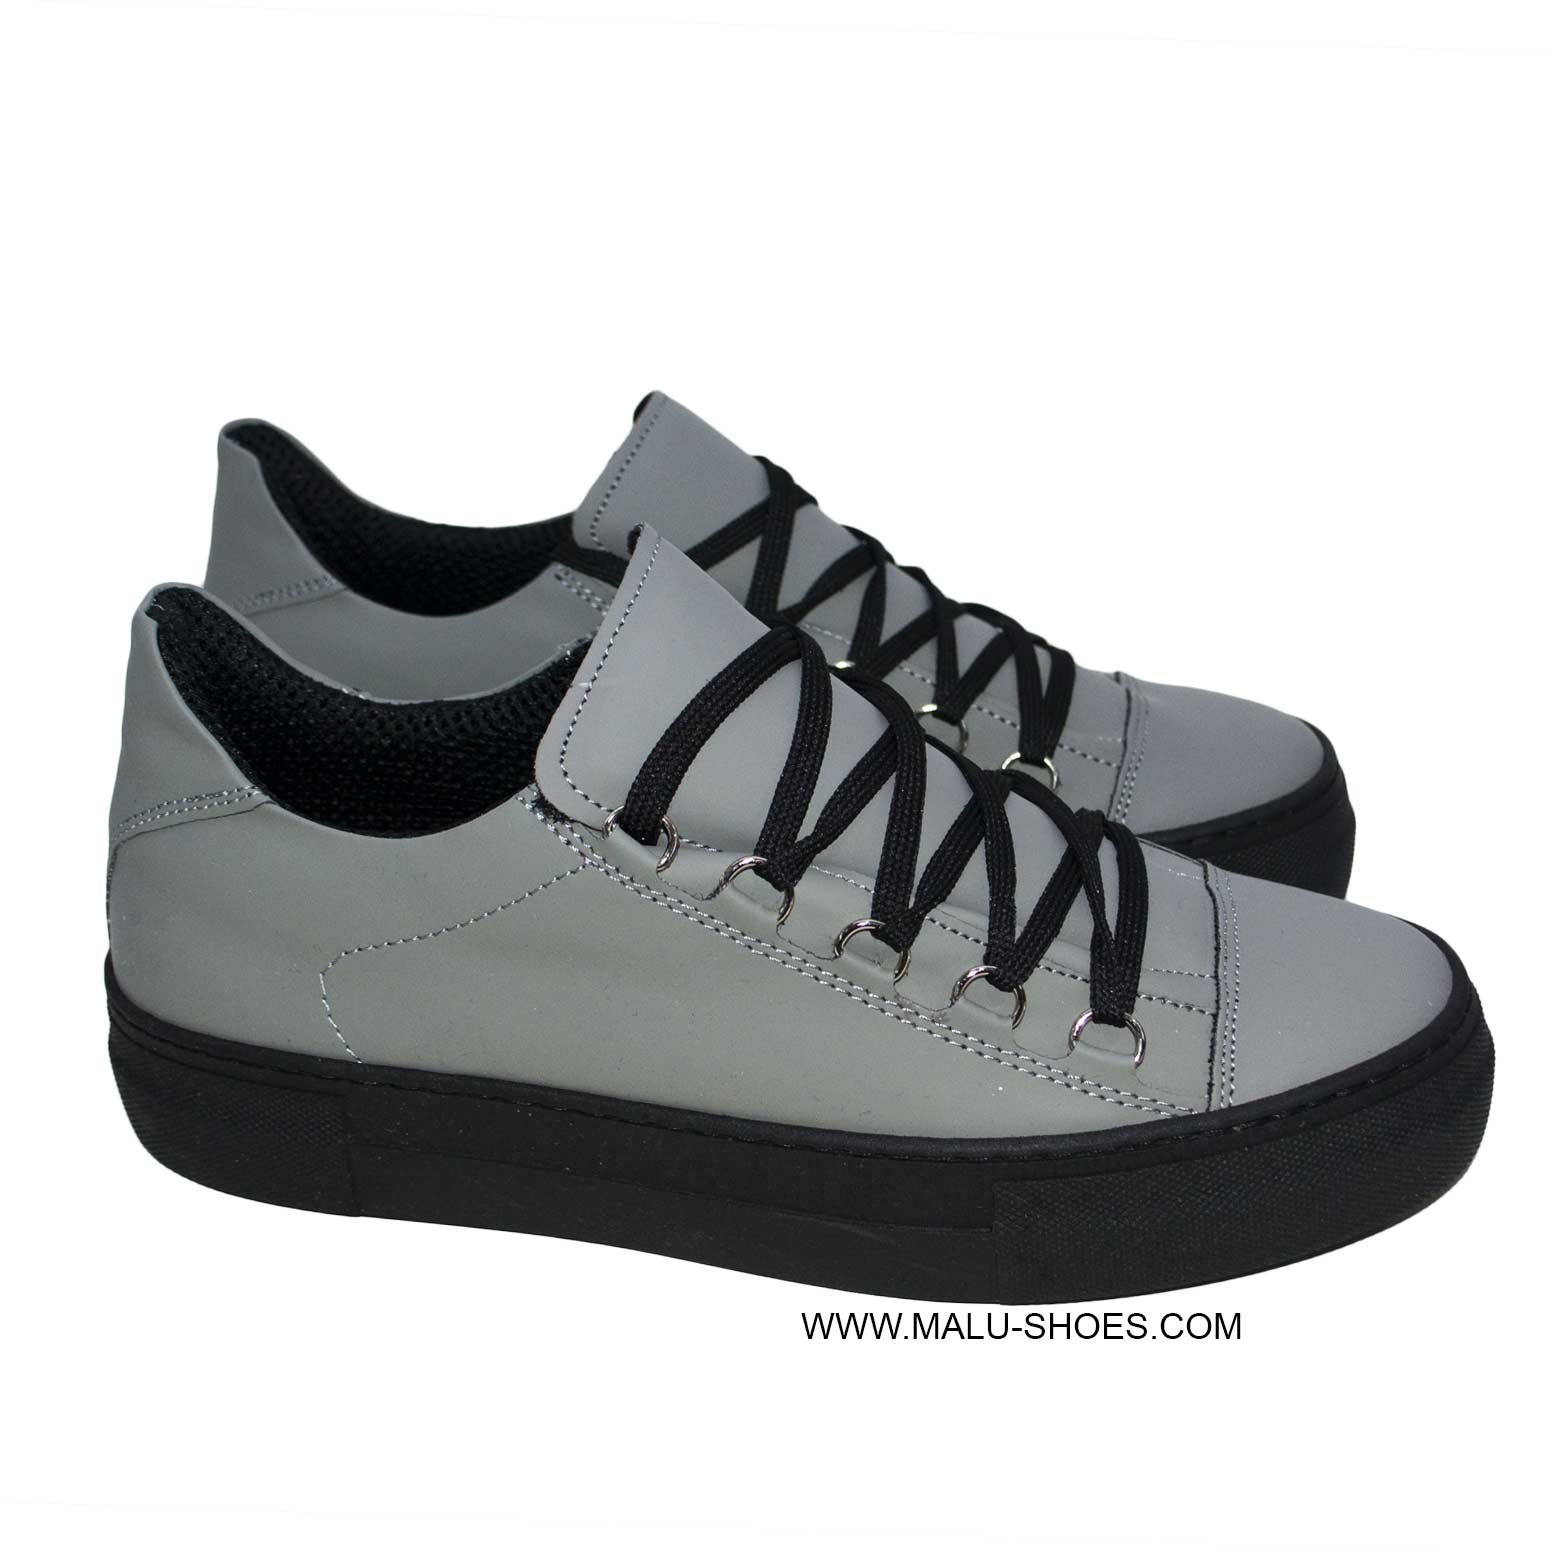 Sneakers bassa gommato grigio fondo alto nero made in italy 